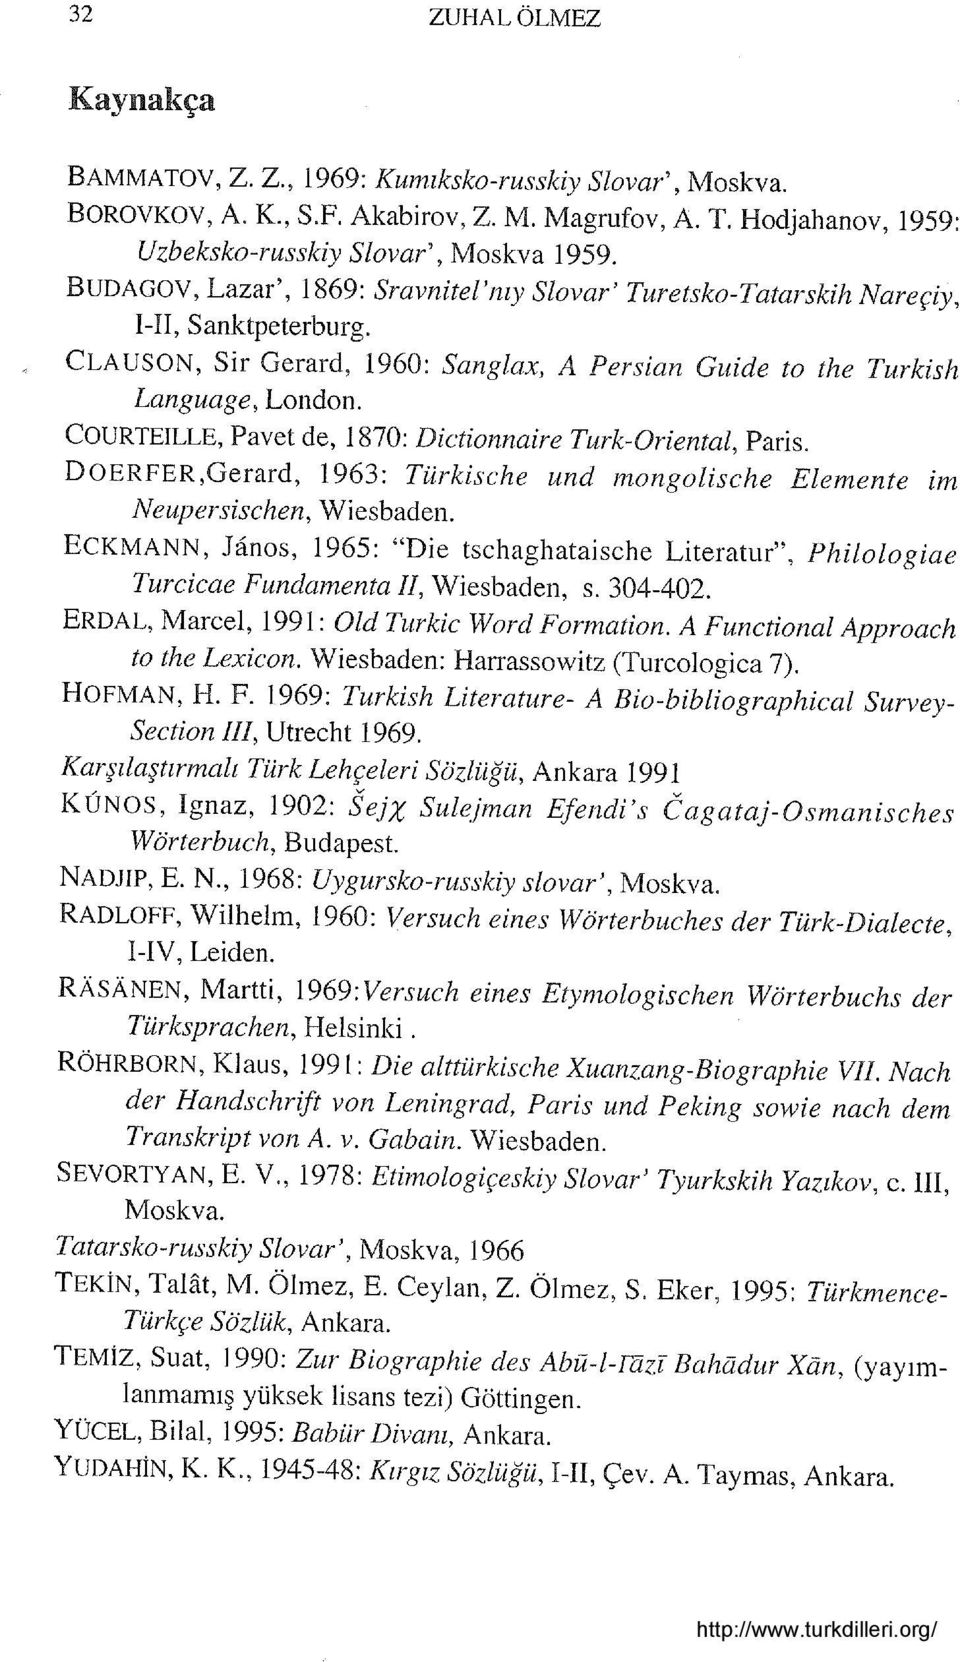 COURTEILLE, Pavet de, 1870: Dictionnaire Turk-Oriental, Paris. DOERFER,Gerard, 1963: Türkische und mongolische Elemente im Neupersischen, Wiesbaden.